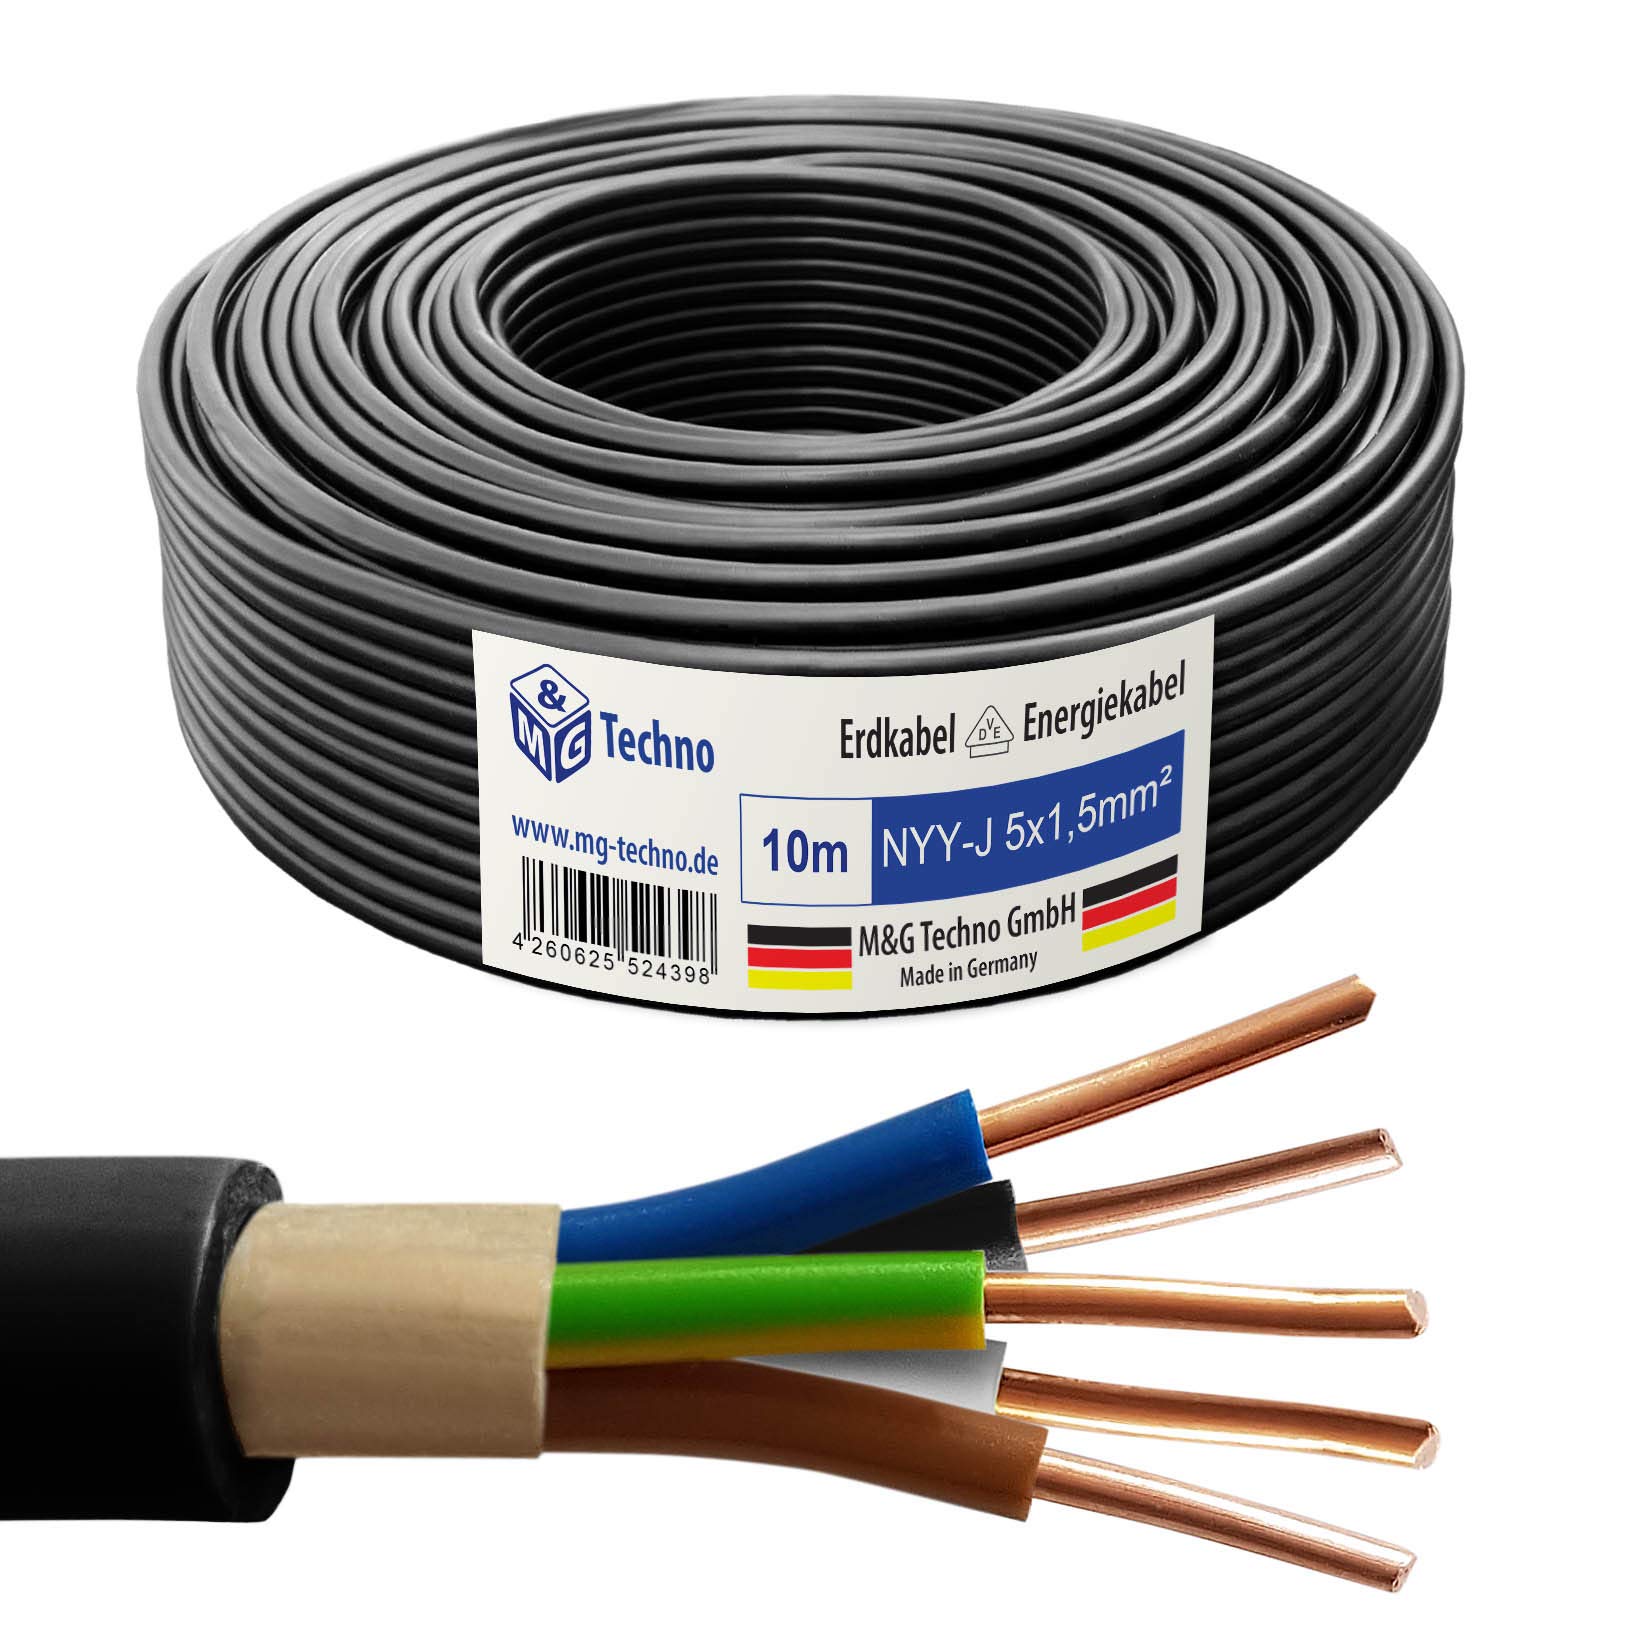 M&G Techno 10m NYY-J 5x1,5 mm² Erdkabel Elektro Strom Kabel Kupfer eindrähtig Made in Germany